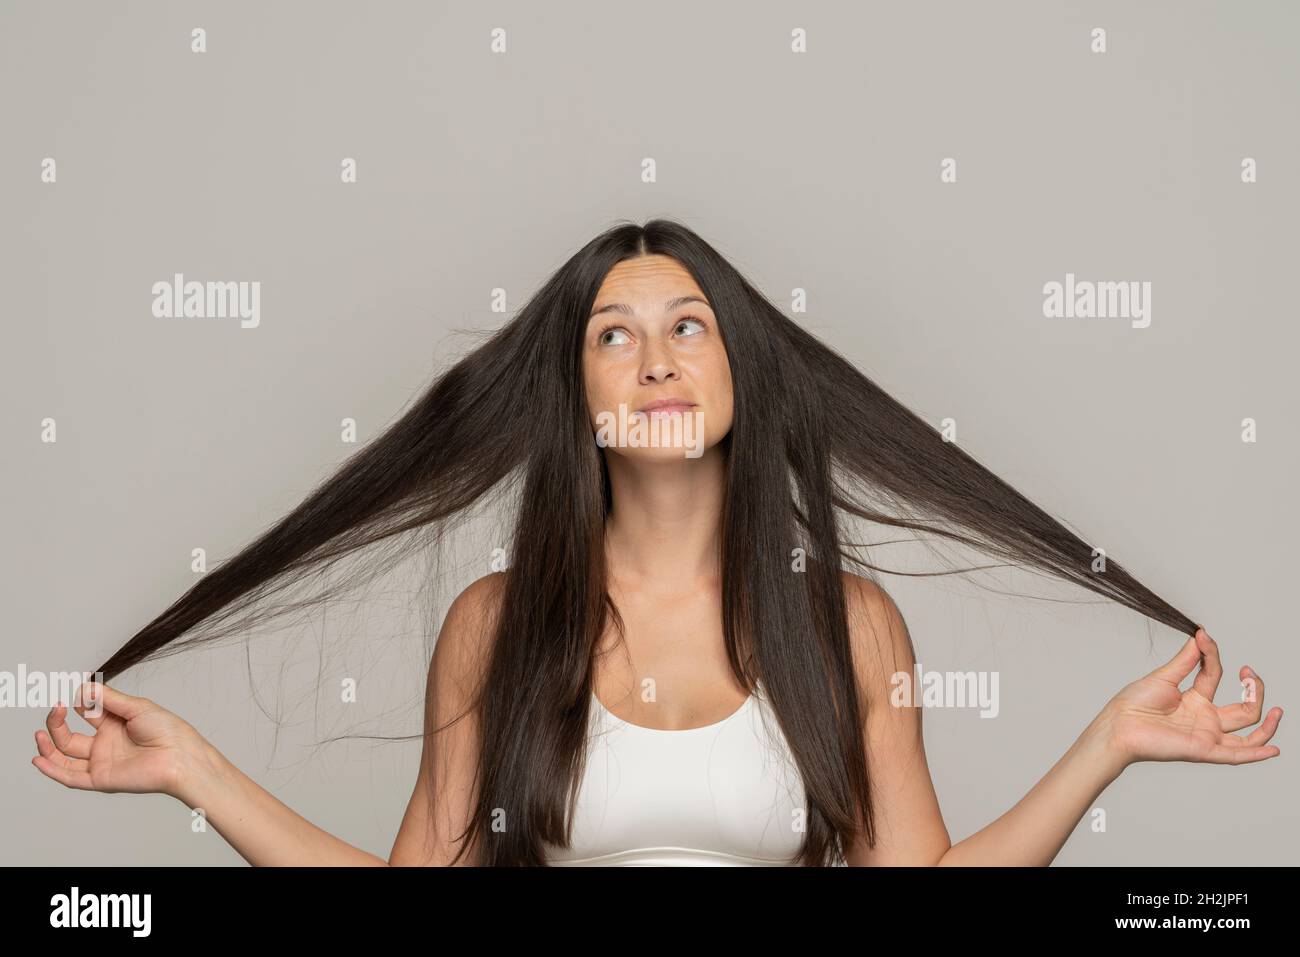 Eine junge Frau hält und zeigt ihr langes Haar auf grauem Hintergrund Stockfoto